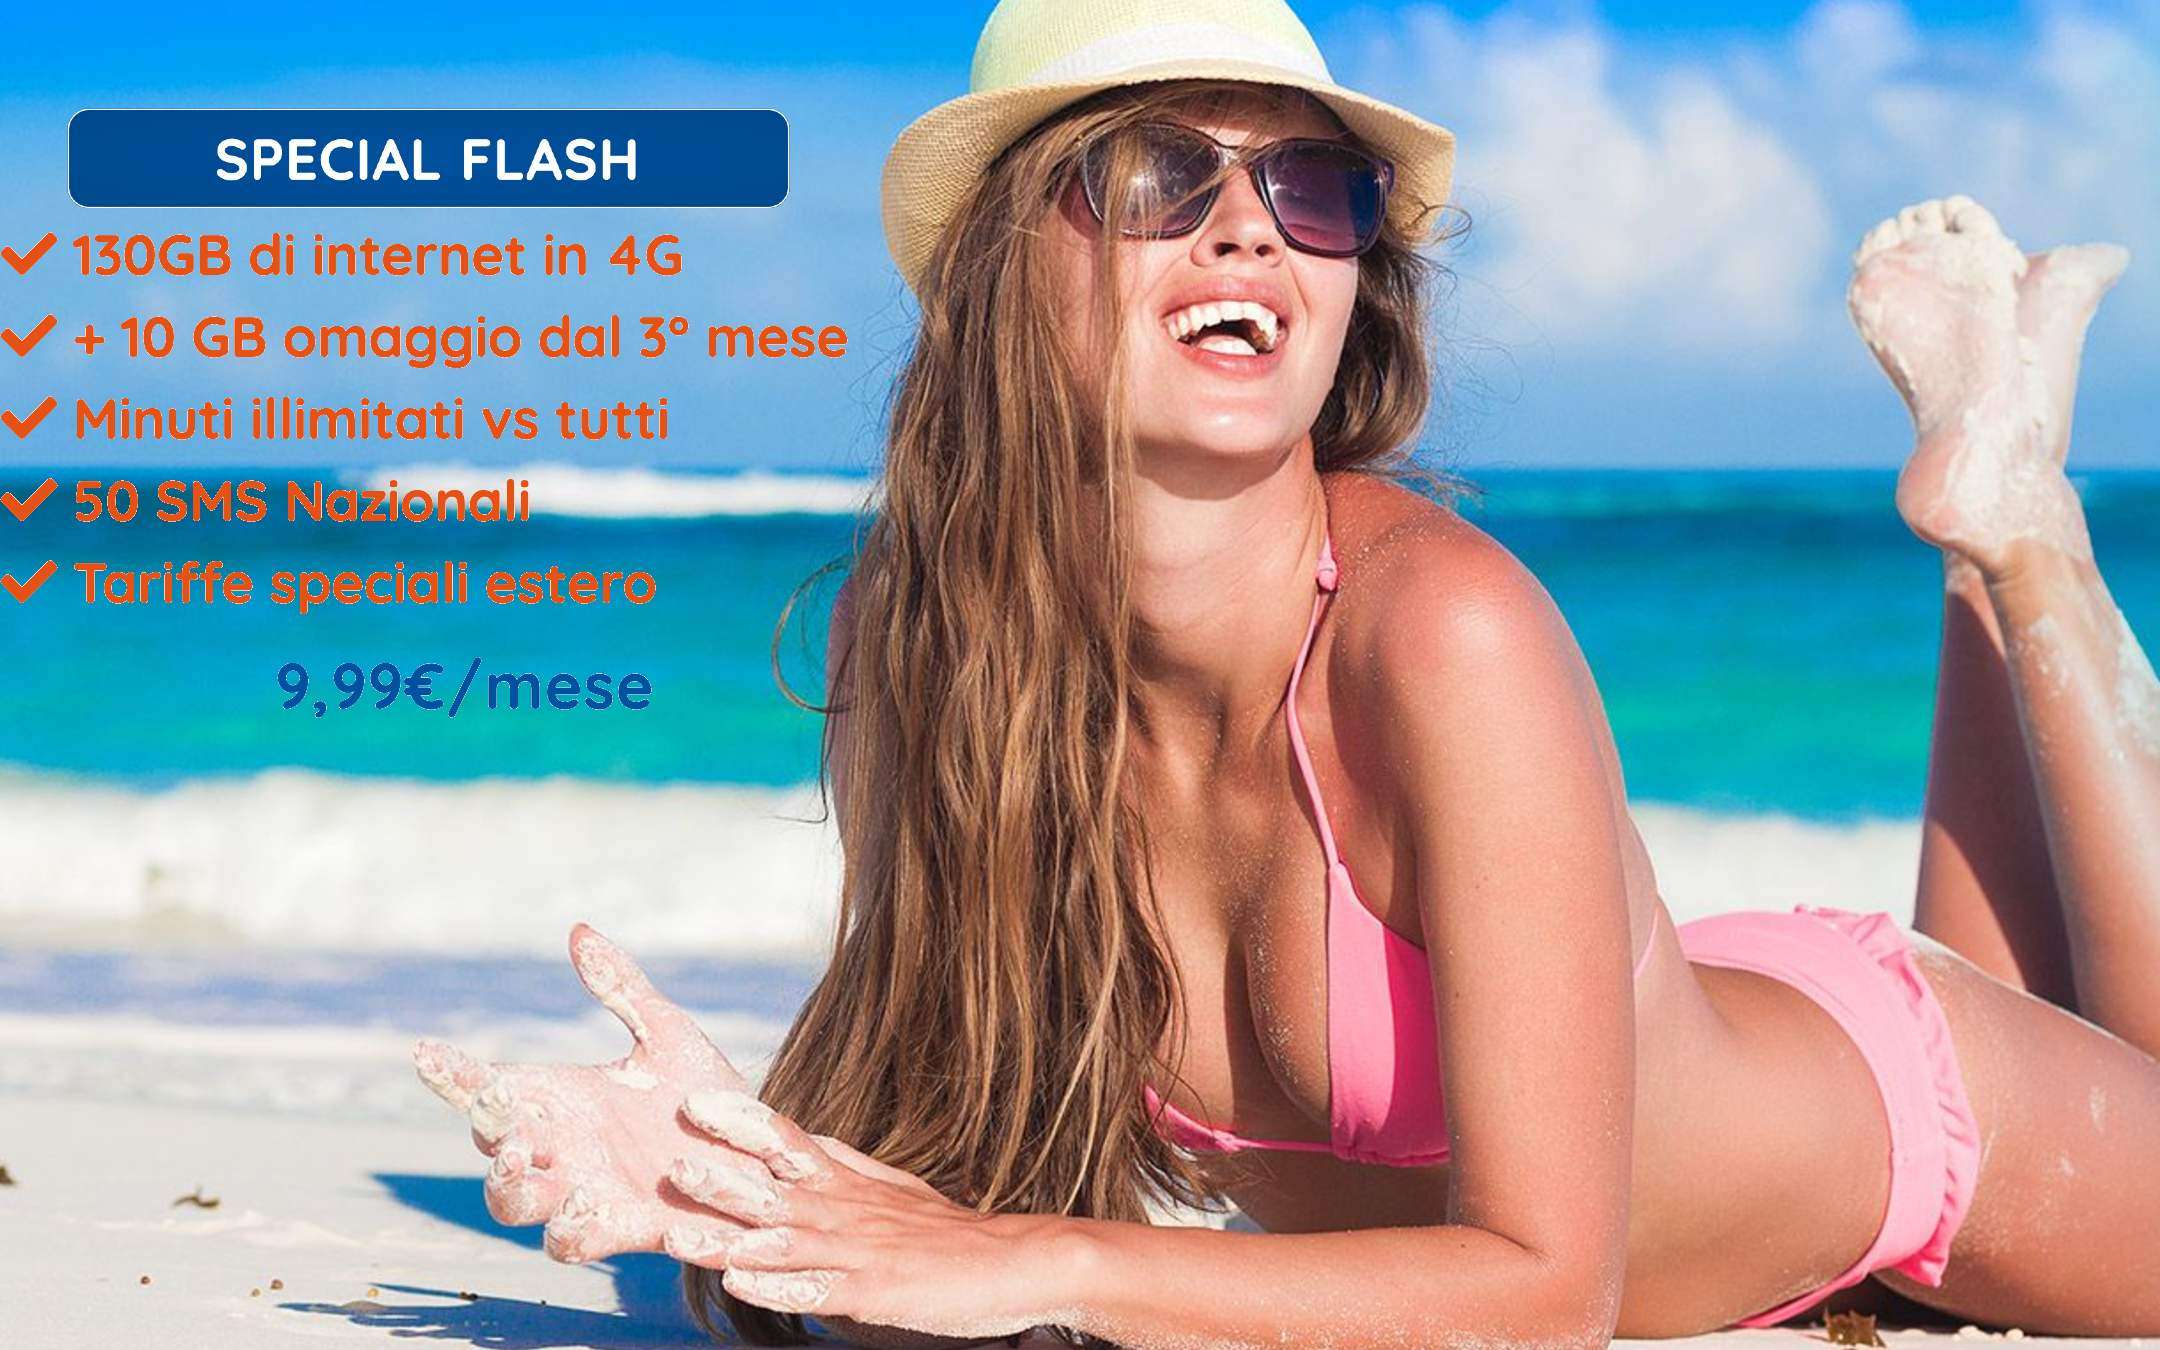 1Mobile Special Flash: PROMO con 140GB prorogata!